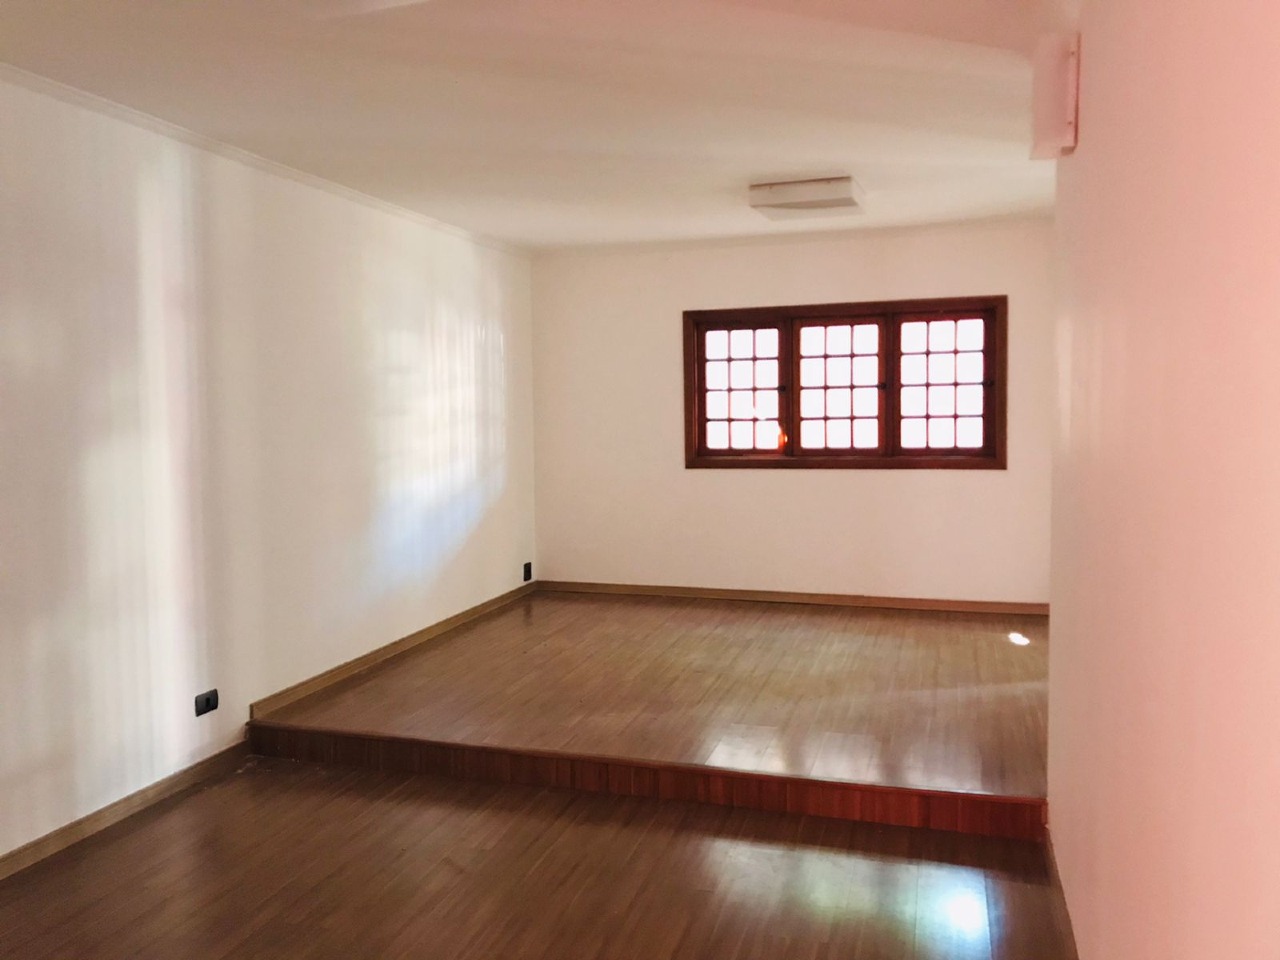 Casa à venda, 3 quartos, 1 suíte, no bairro Castelinho em Piracicaba - SP